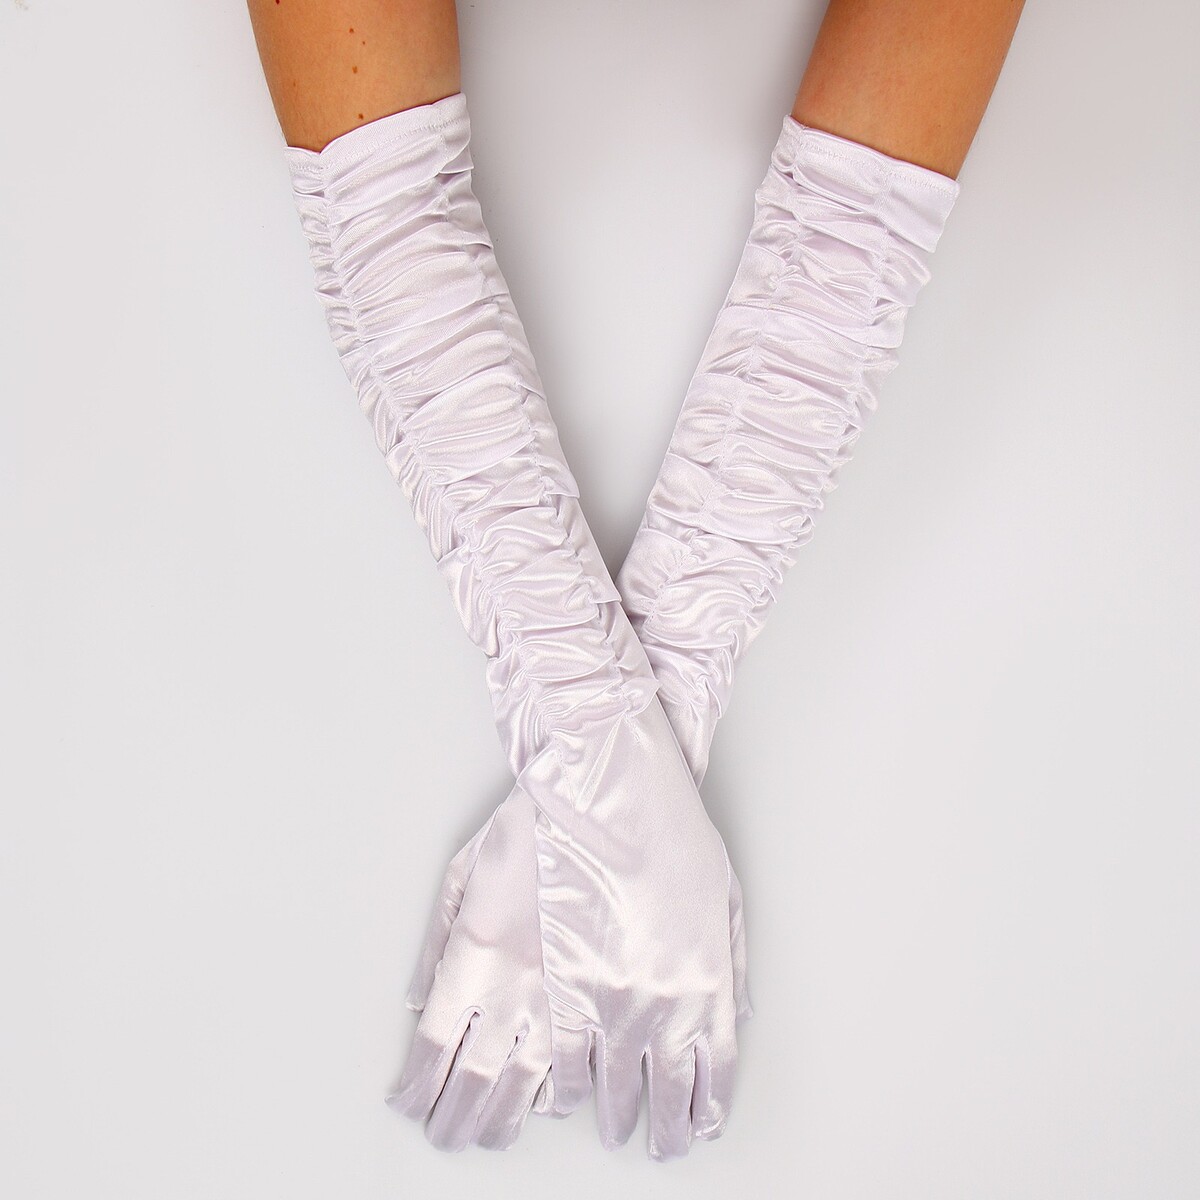 Карнавальный аксессуар - перчатки со сборкой, цвет белый карнавальный костюм batik 9014 к 21 базз лайтер белый 134